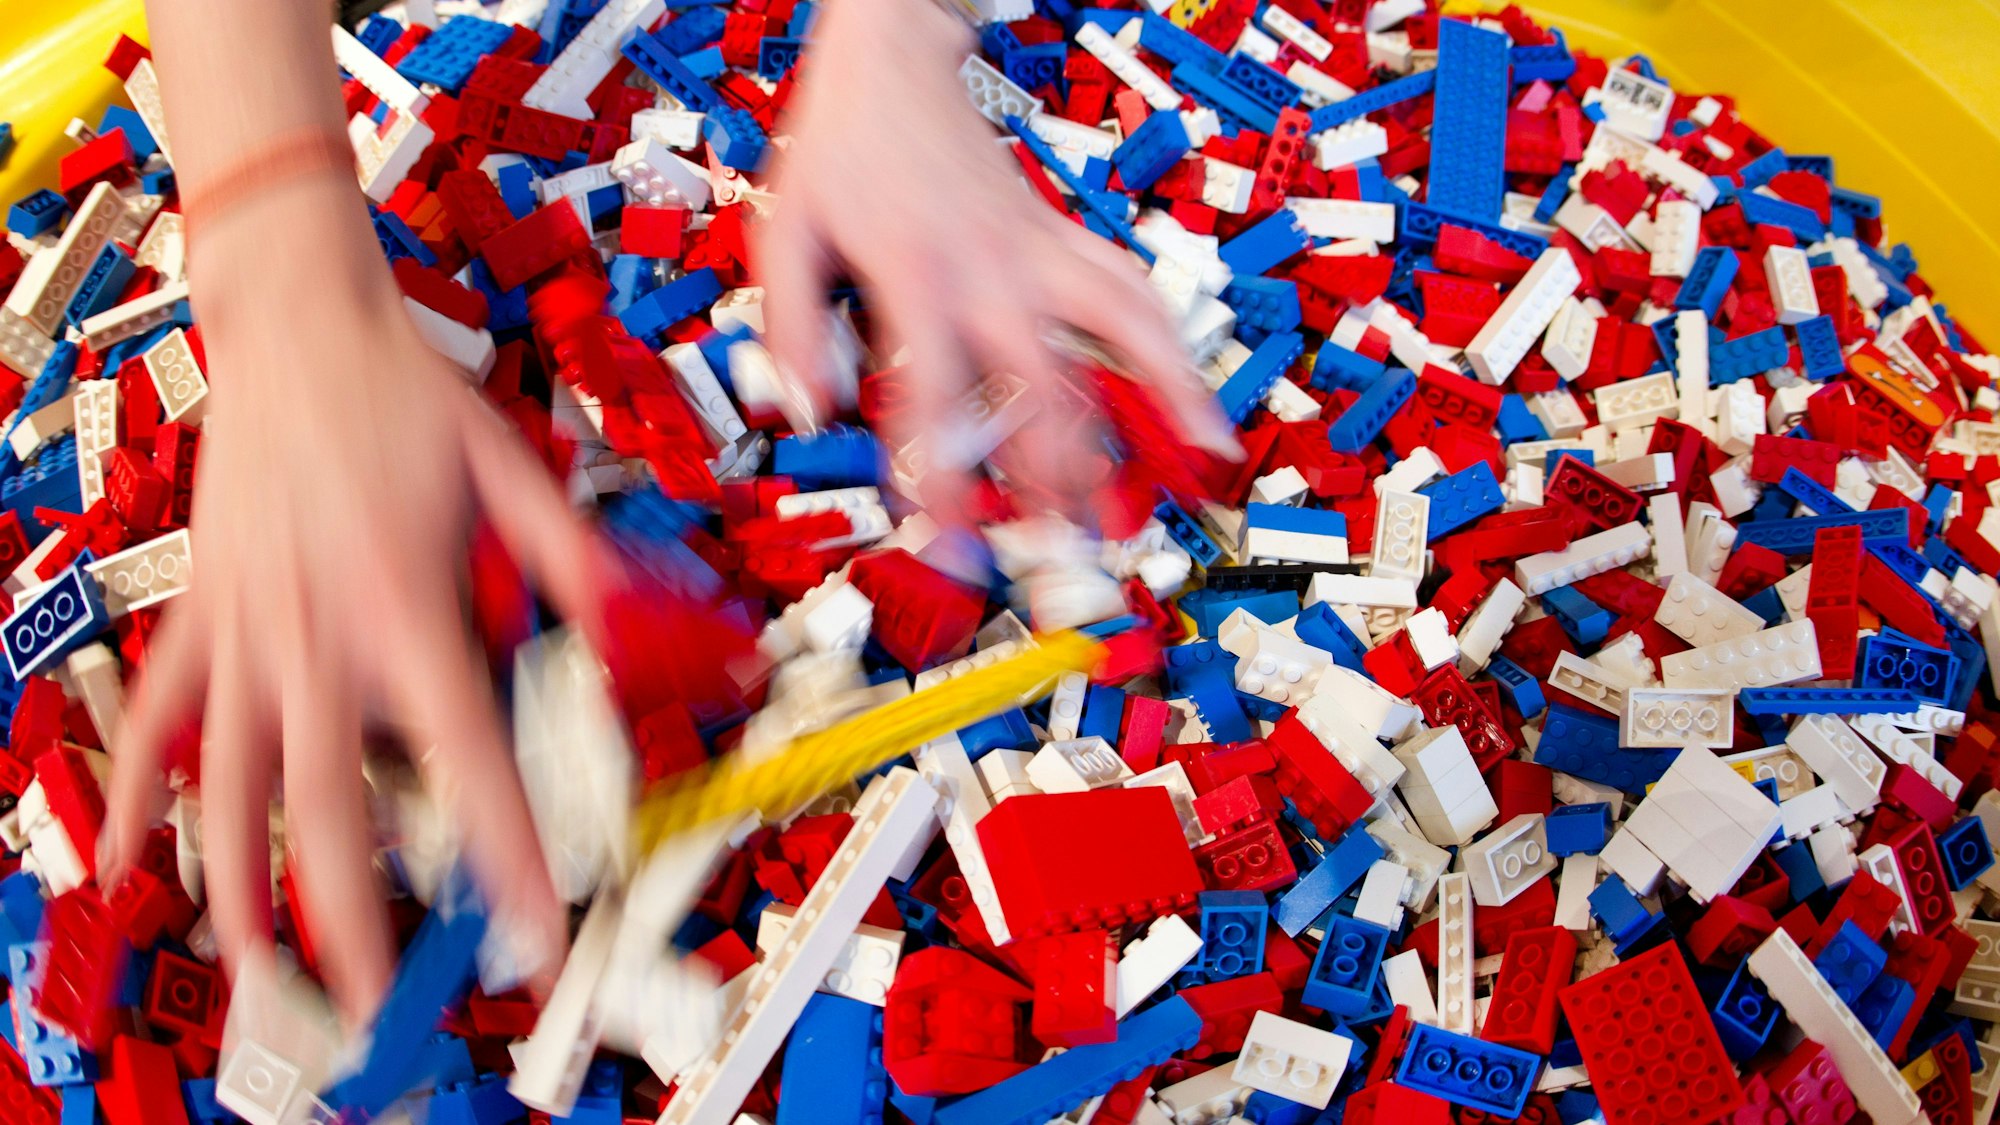 Zwei Hände wühlen in einem bunten Haufen aus Legosteinen.